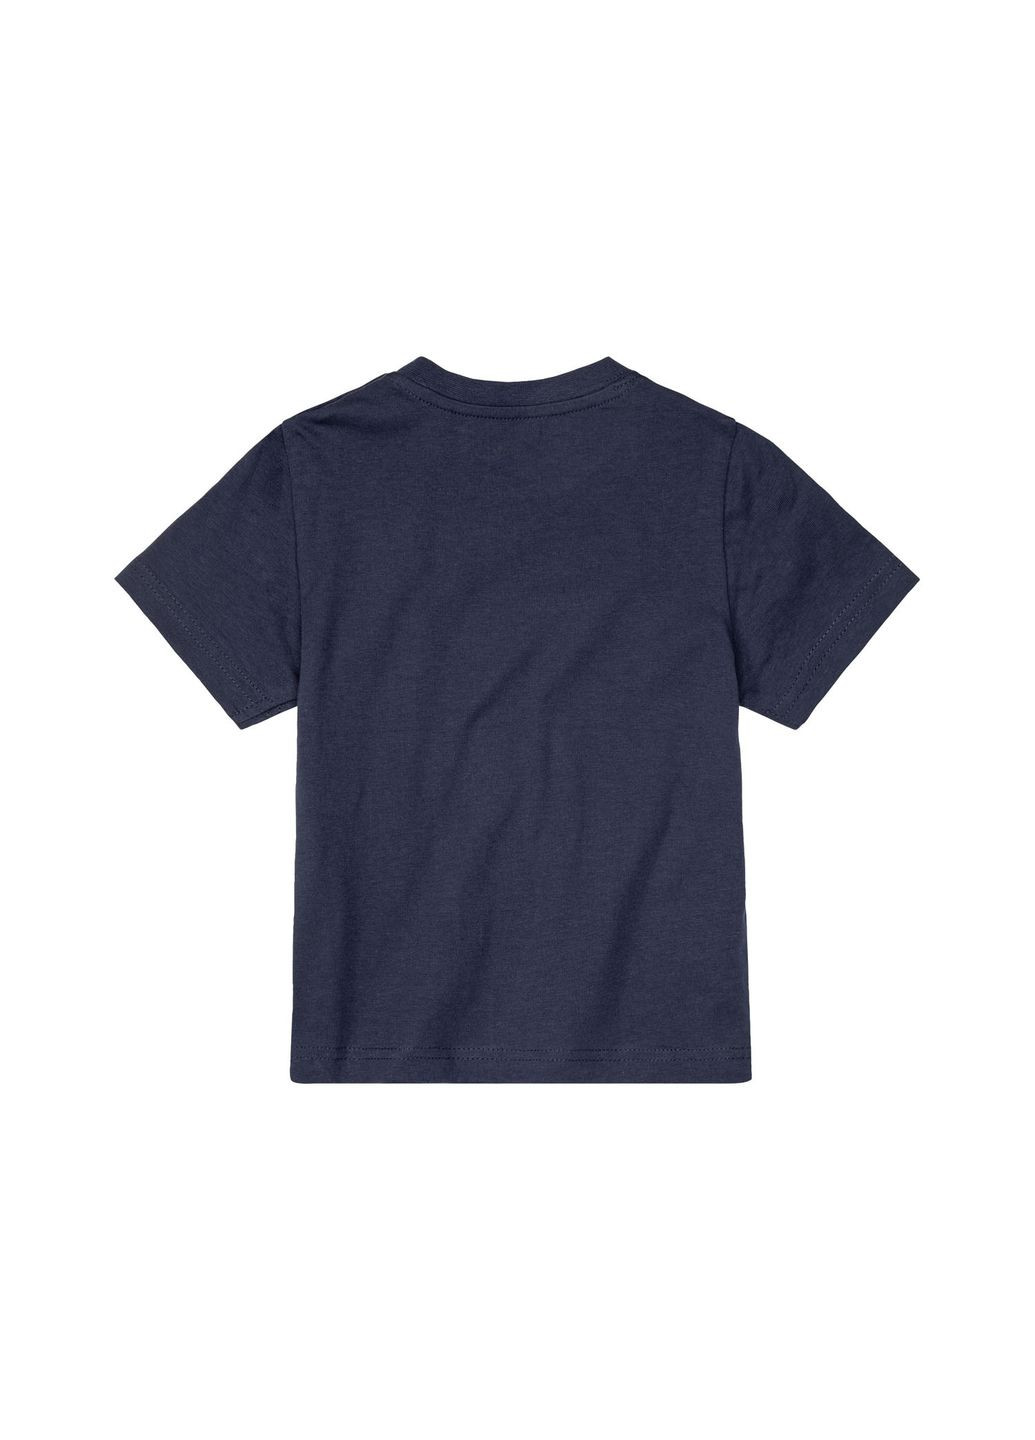 Темно-синя демісезонна футболка бавовняна для хлопчика 372241 темно-синій Lupilu